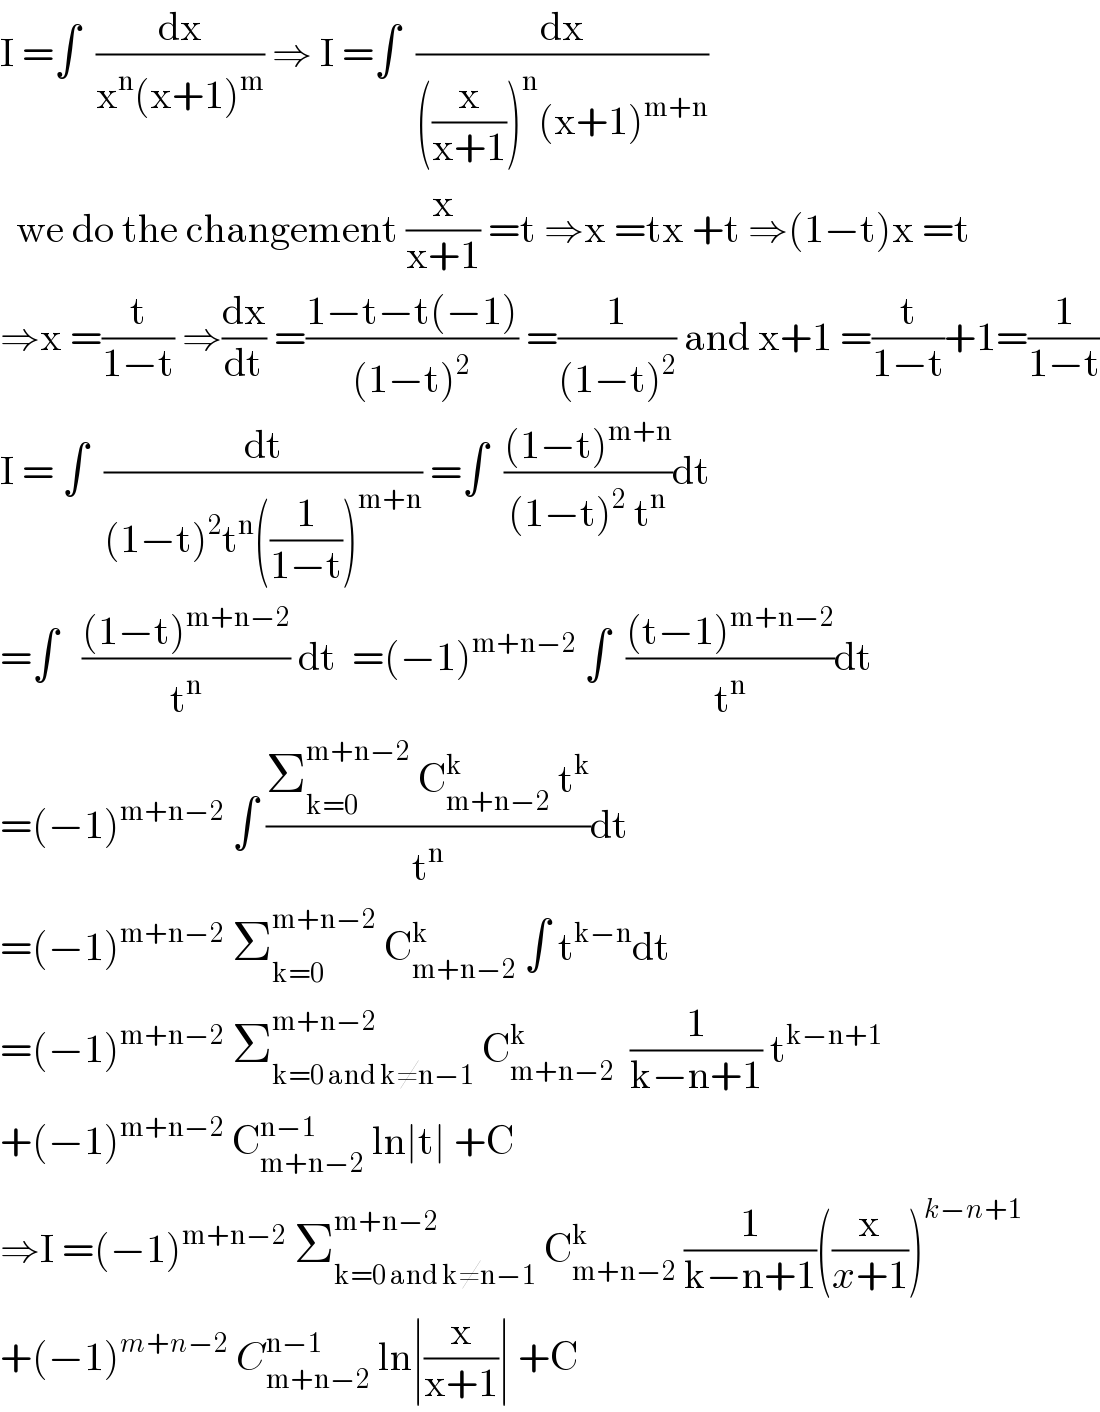 I =∫  (dx/(x^n (x+1)^m )) ⇒ I =∫  (dx/(((x/(x+1)))^n (x+1)^(m+n) ))    we do the changement (x/(x+1)) =t ⇒x =tx +t ⇒(1−t)x =t  ⇒x =(t/(1−t)) ⇒(dx/dt) =((1−t−t(−1))/((1−t)^2 )) =(1/((1−t)^2 )) and x+1 =(t/(1−t))+1=(1/(1−t))  I = ∫  (dt/((1−t)^2 t^n ((1/(1−t)))^(m+n) )) =∫  (((1−t)^(m+n) )/((1−t)^2  t^n ))dt  =∫   (((1−t)^(m+n−2) )/t^n ) dt  =(−1)^(m+n−2)  ∫  (((t−1)^(m+n−2) )/t^n )dt  =(−1)^(m+n−2)  ∫ ((Σ_(k=0) ^(m+n−2)  C_(m+n−2) ^k  t^k )/t^n )dt  =(−1)^(m+n−2)  Σ_(k=0) ^(m+n−2)  C_(m+n−2) ^k  ∫ t^(k−n) dt  =(−1)^(m+n−2)  Σ_(k=0 and k≠n−1) ^(m+n−2)  C_(m+n−2) ^k   (1/(k−n+1)) t^(k−n+1)   +(−1)^(m+n−2)  C_(m+n−2) ^(n−1)  ln∣t∣ +C  ⇒I =(−1)^(m+n−2)  Σ_(k=0 and k≠n−1) ^(m+n−2)  C_(m+n−2) ^k  (1/(k−n+1))((x/(x+1)))^(k−n+1)   +(−1)^(m+n−2)  C_(m+n−2) ^(n−1)  ln∣(x/(x+1))∣ +C  